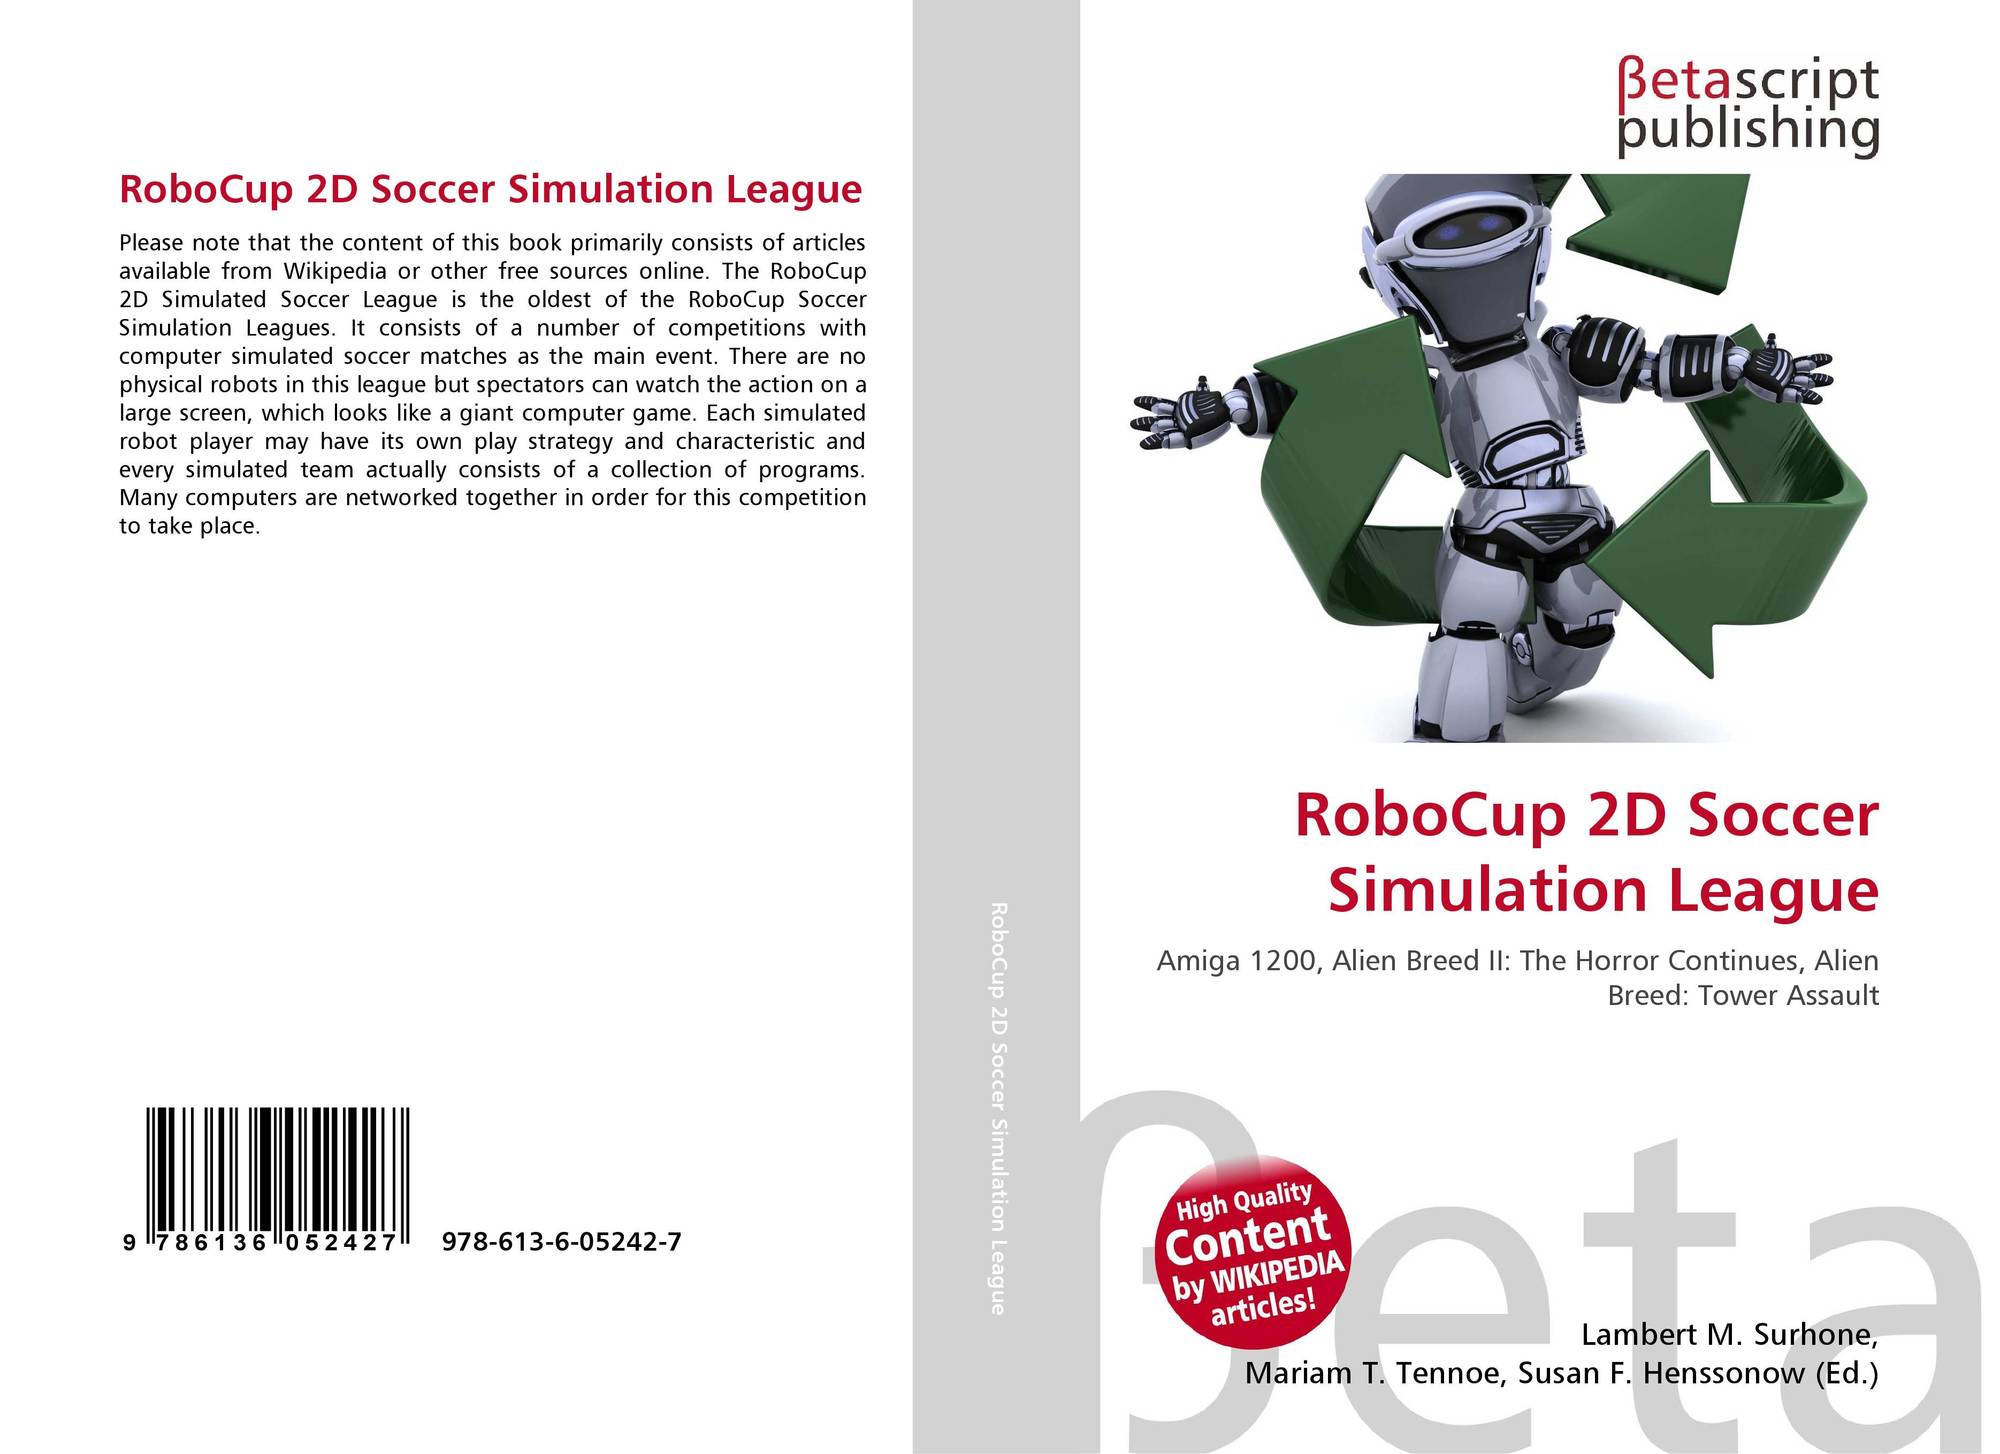 robocup-2d-soccer-simulation-league-978-613-6-05242-7-6136052423-9786136052427